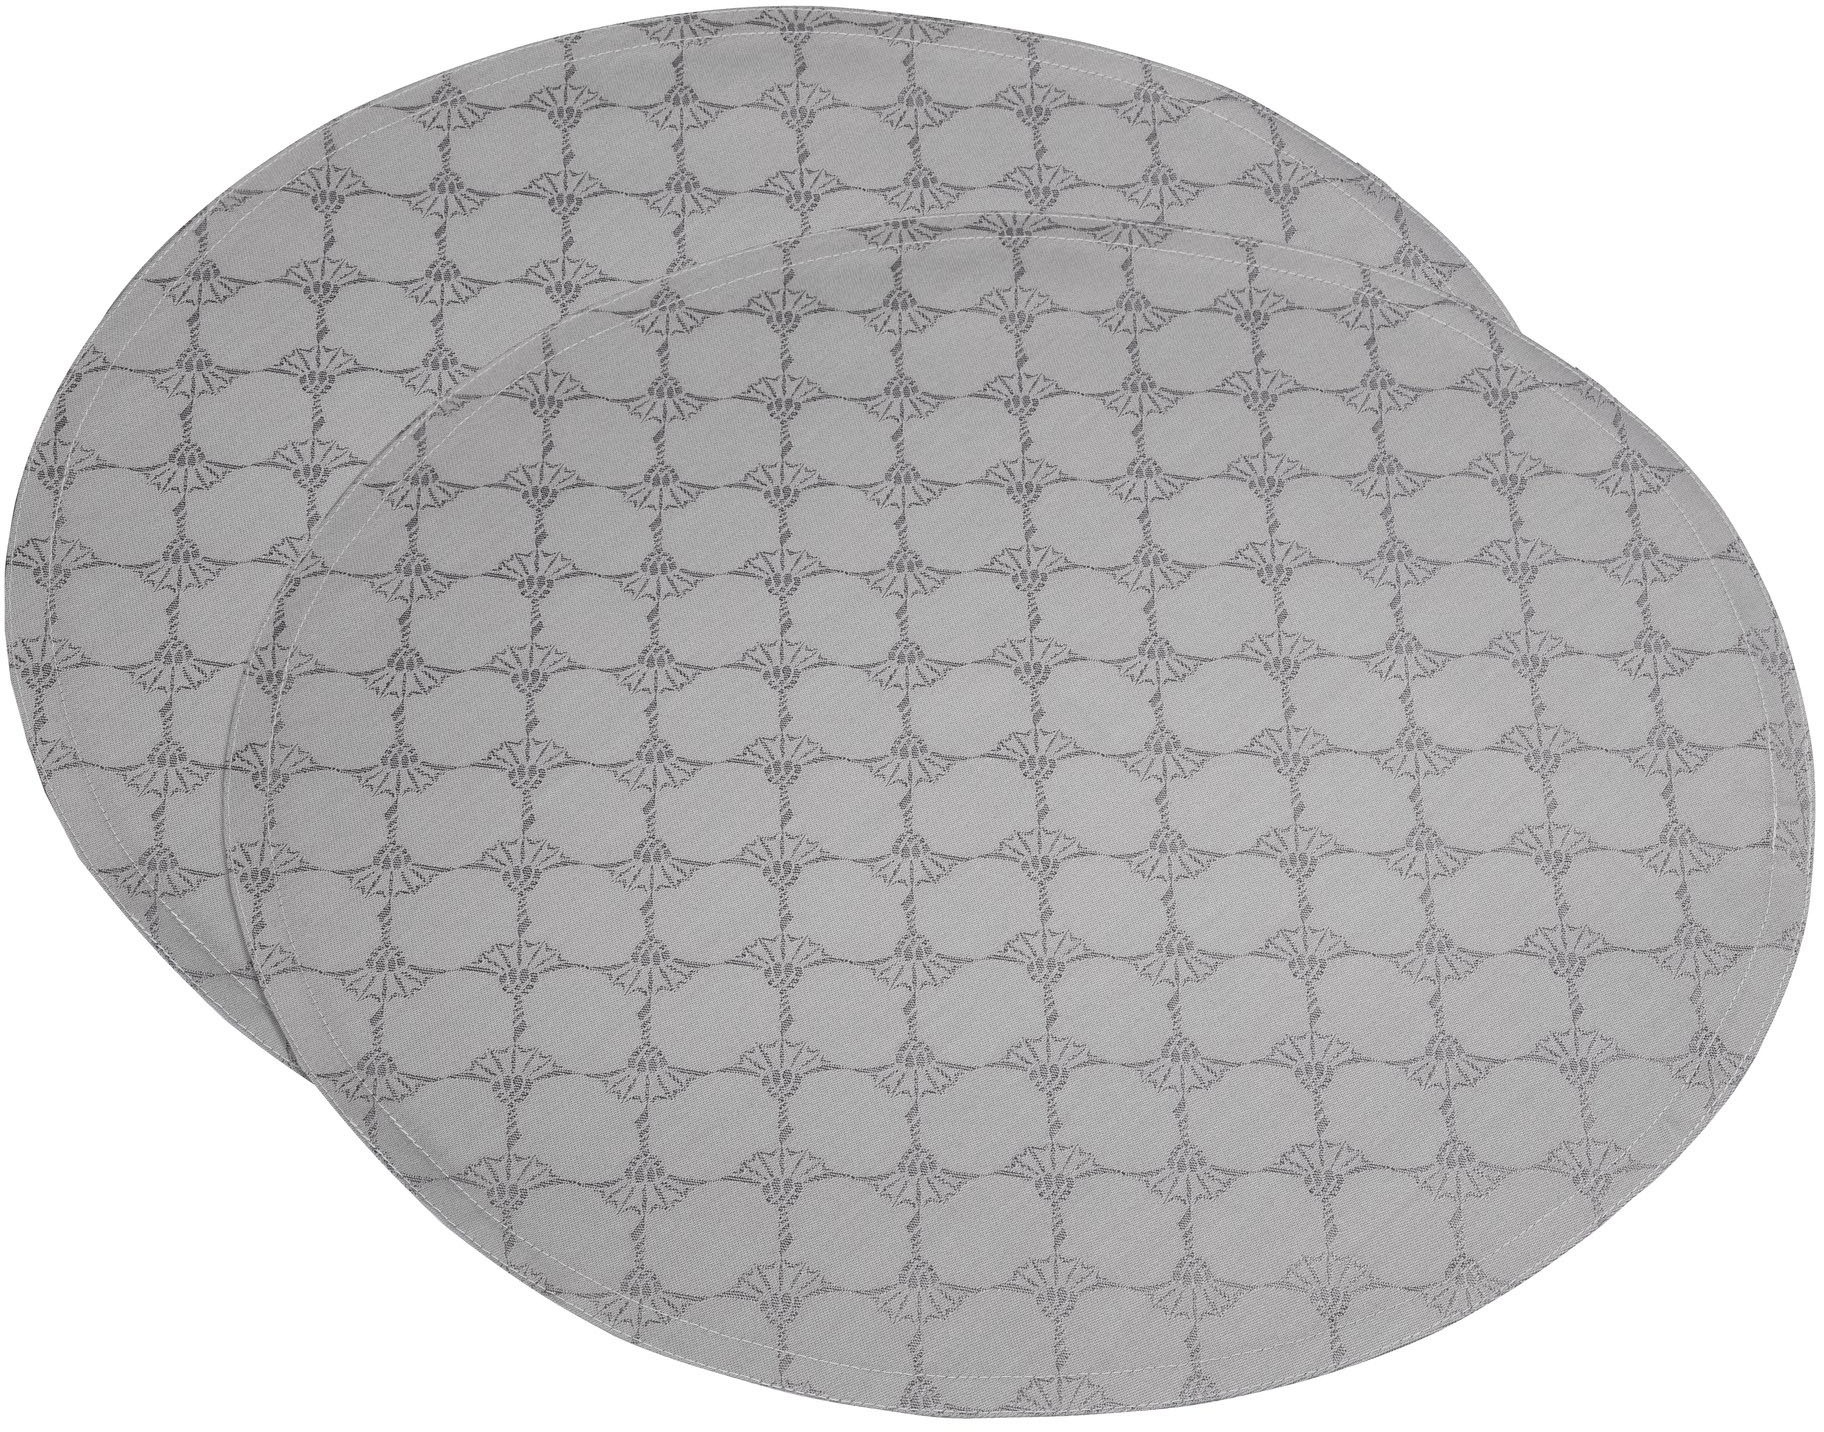 JOOP! Platzset »CORNFLOWER ALLOVER«, (Set, 2 St.), aus Jacquard-Gewebe gefertigt mit Kornblumen-Allover-Muster, Ø 45 cm